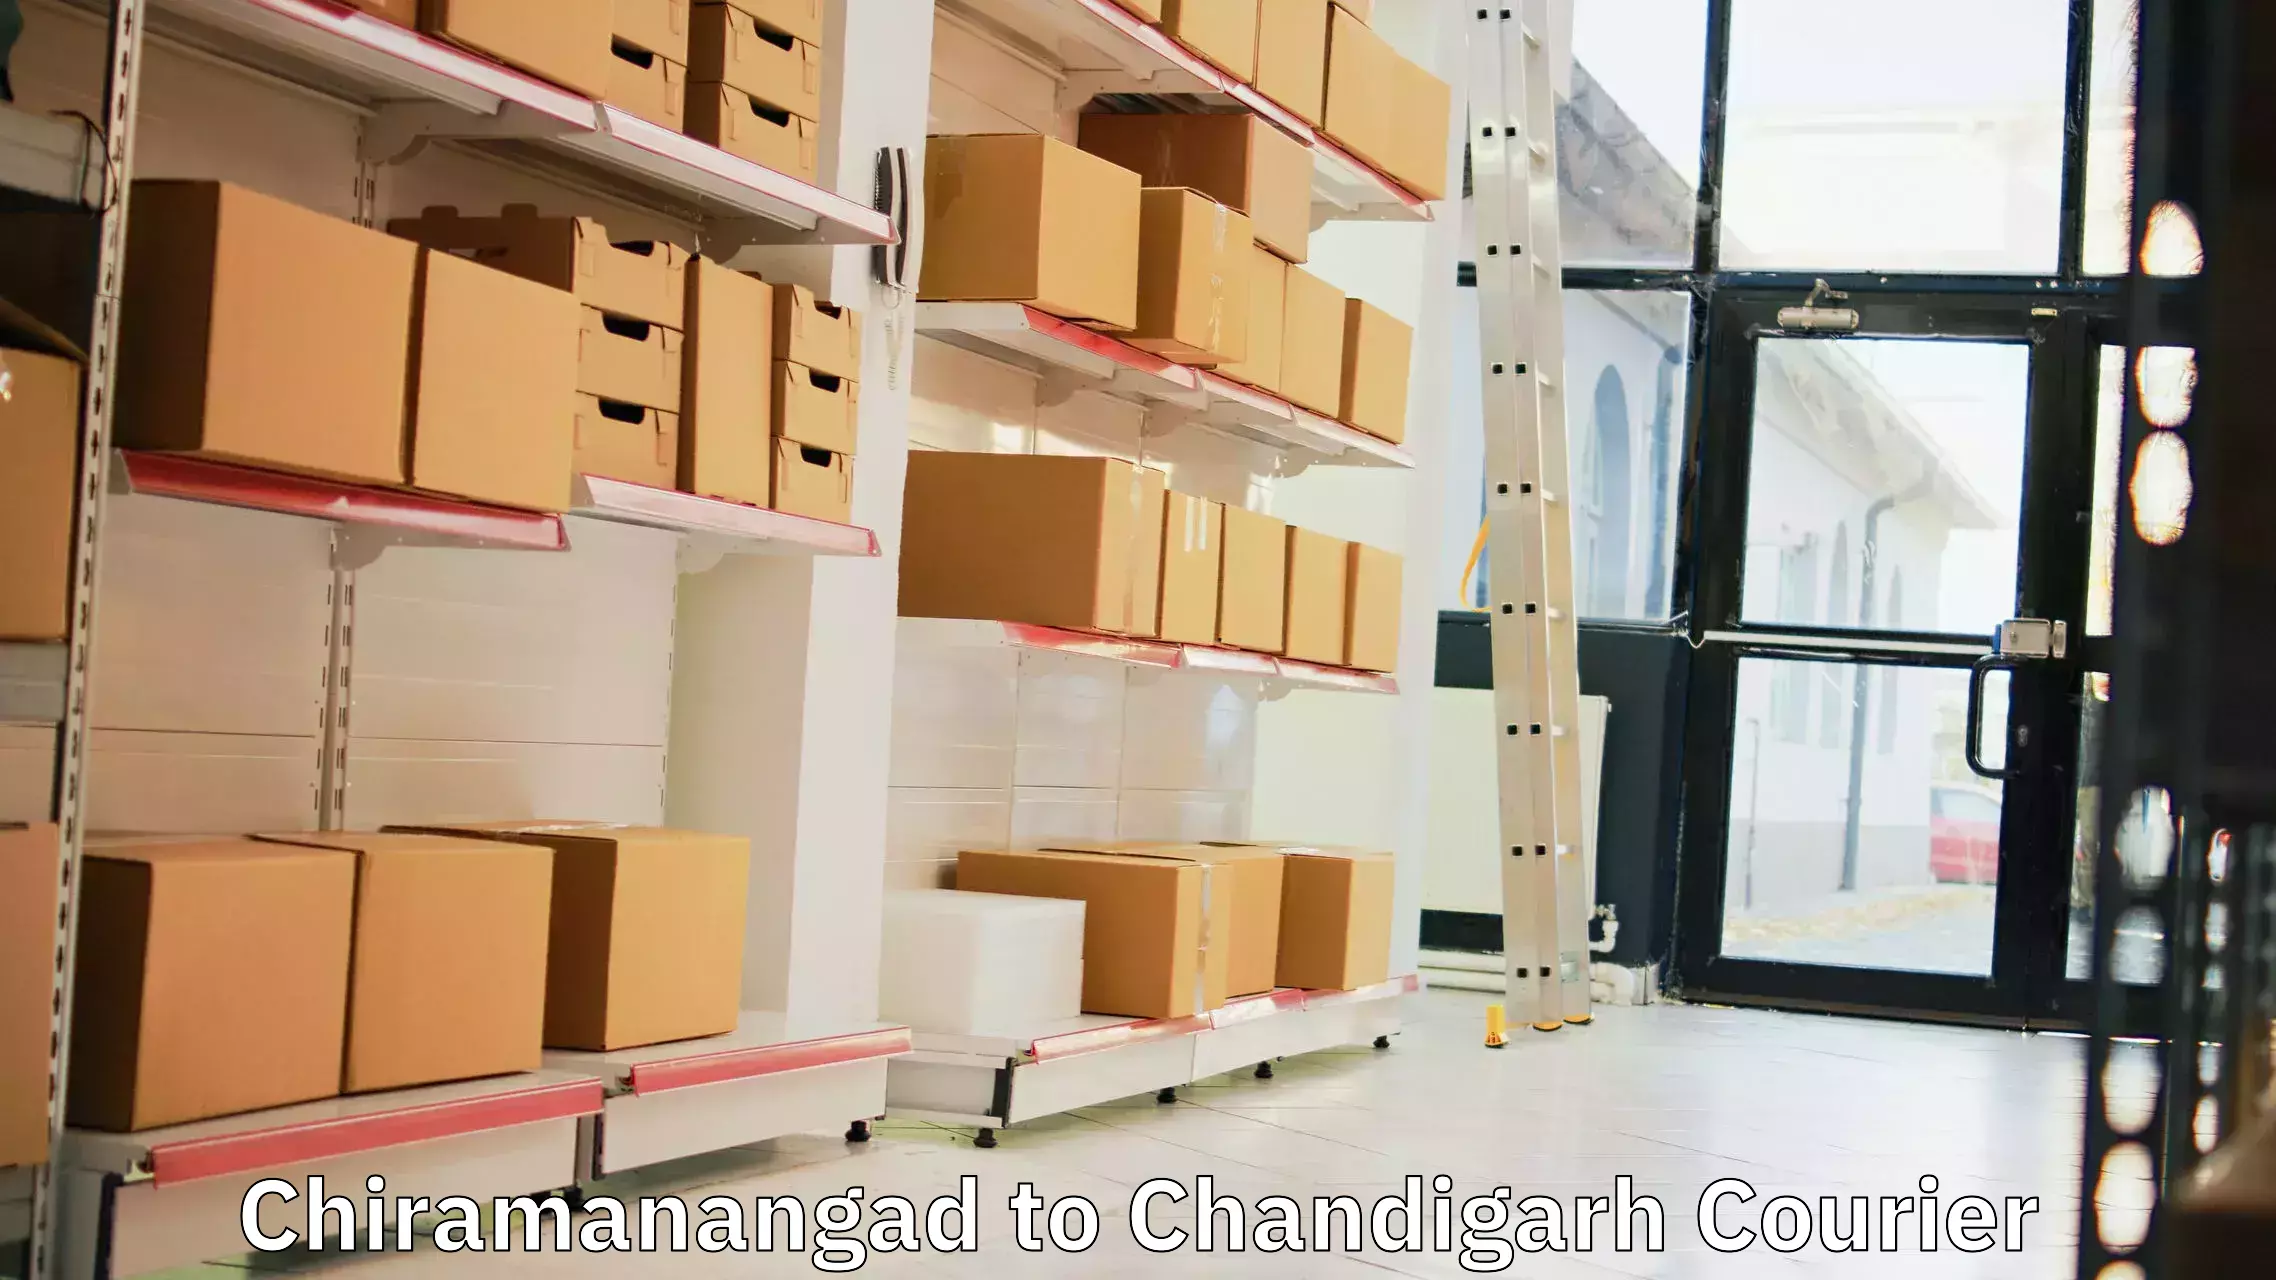 Courier insurance Chiramanangad to Chandigarh